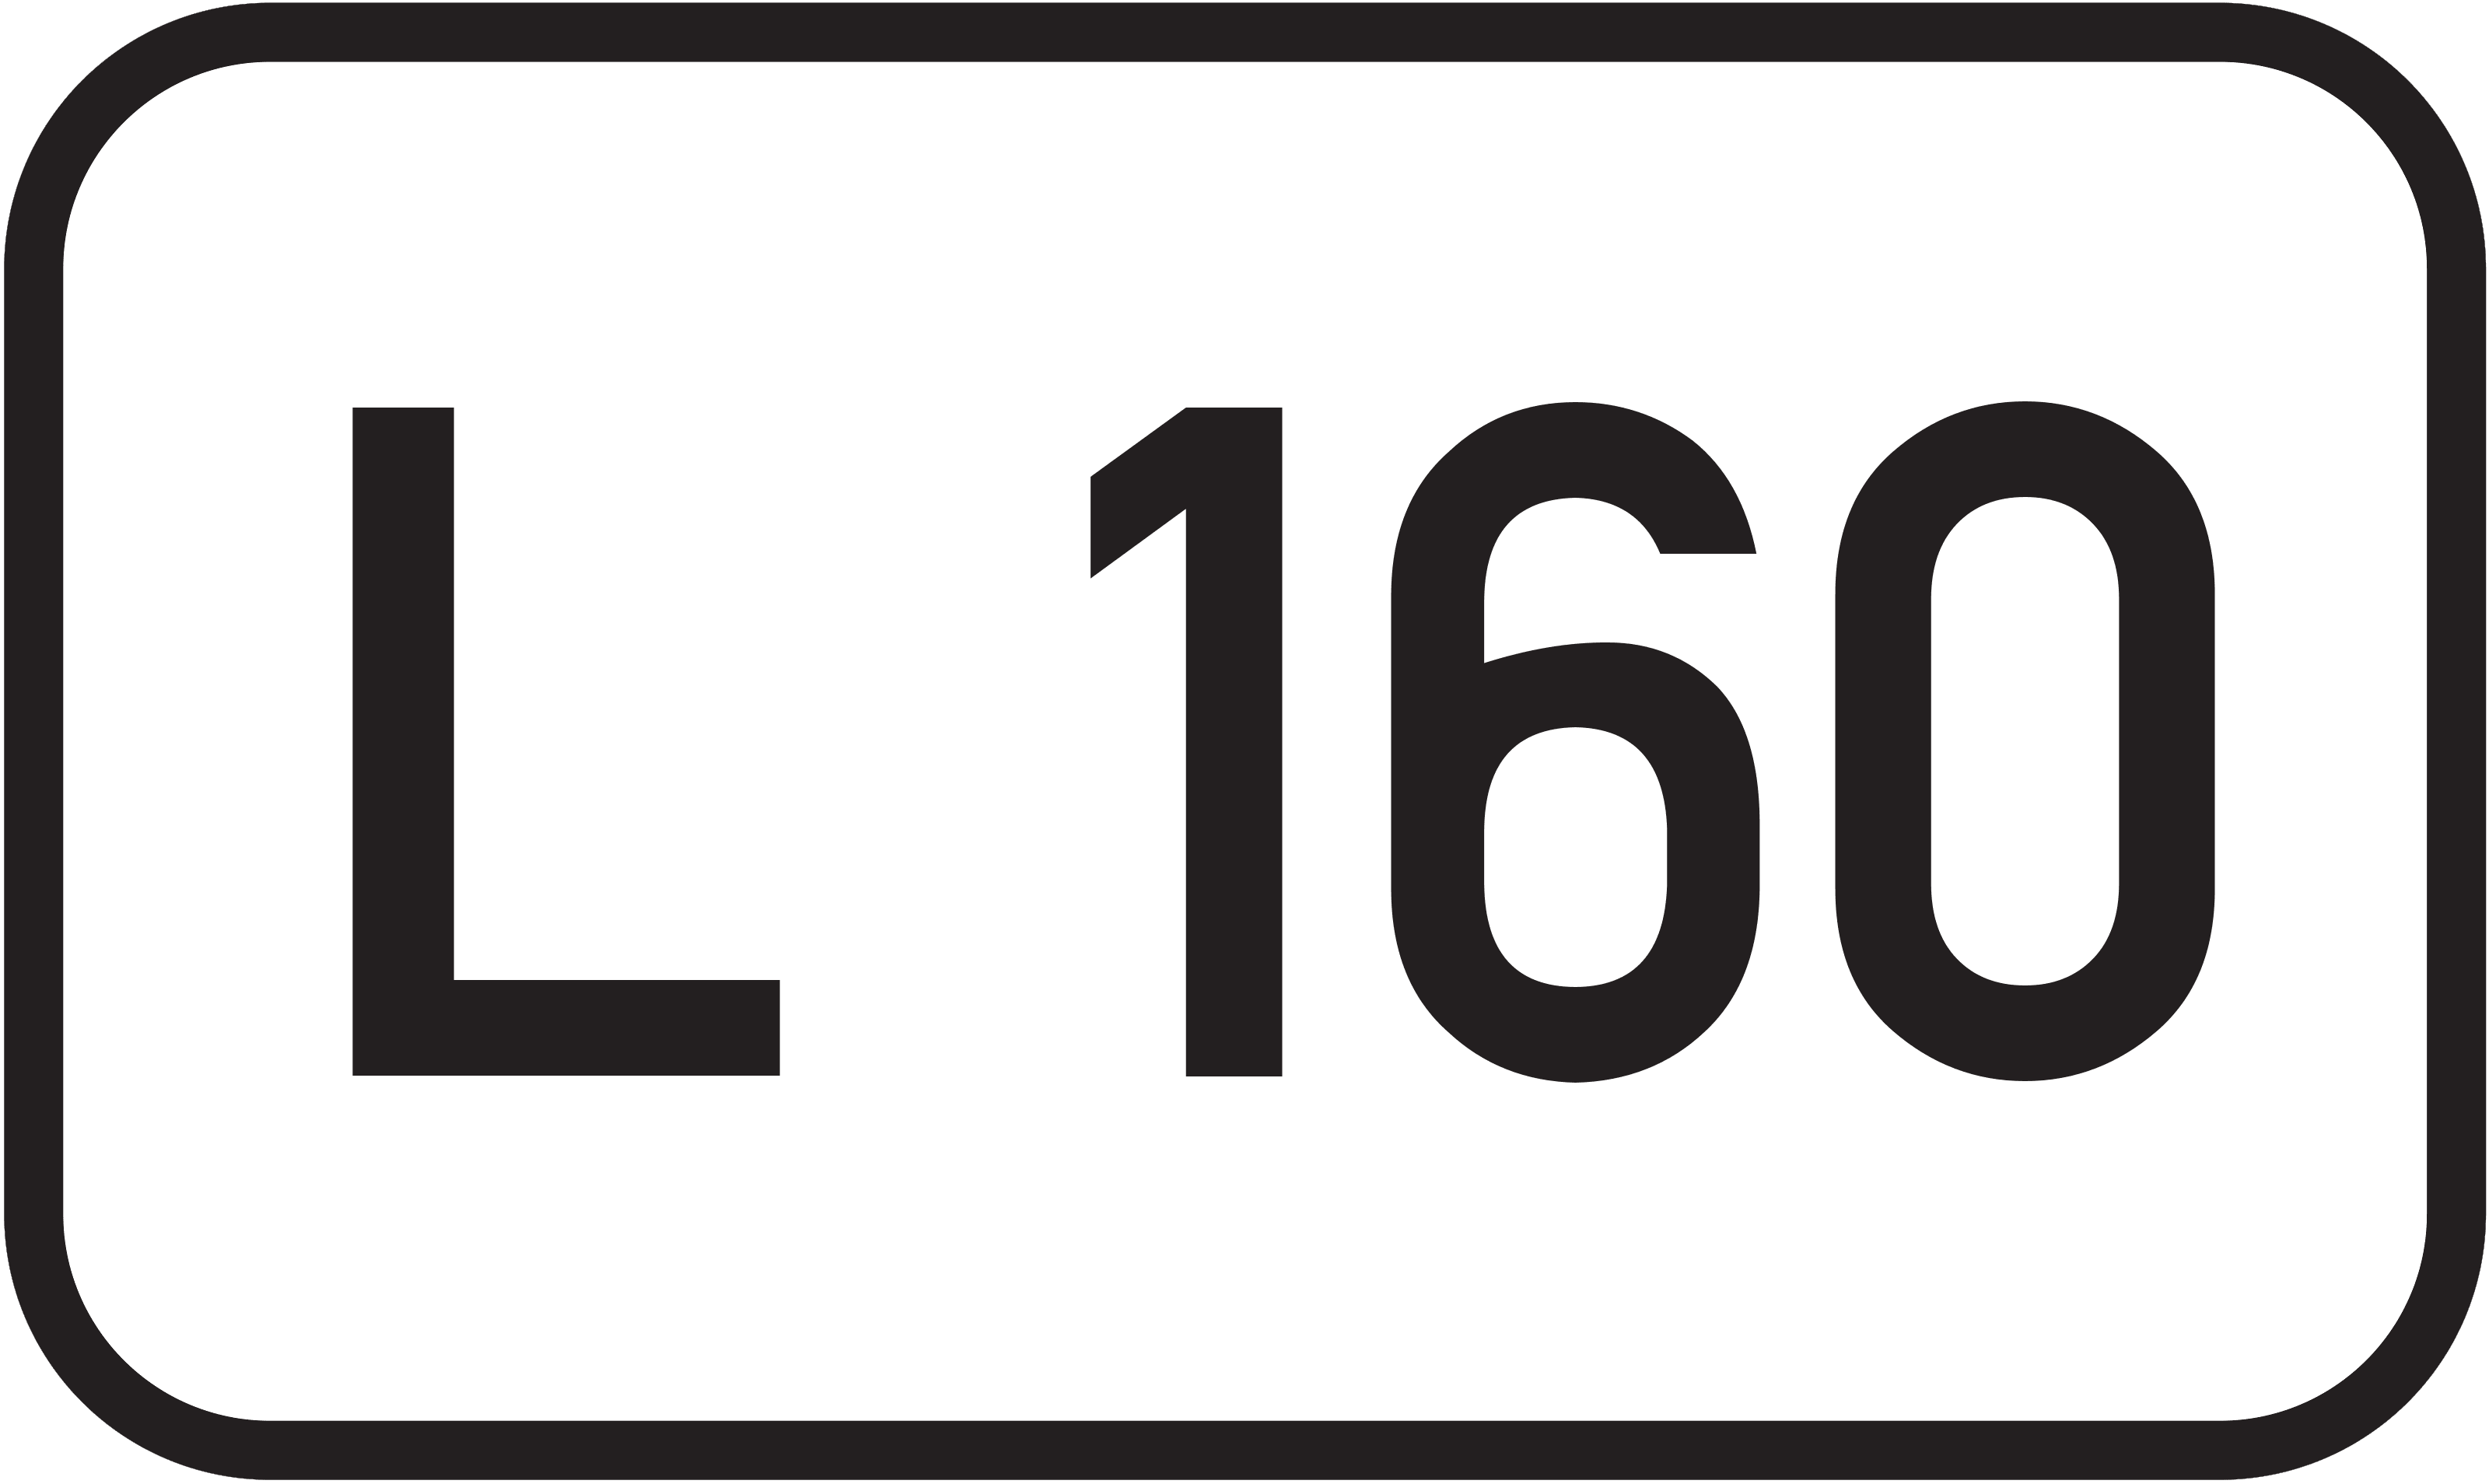 Landesstraße L 160